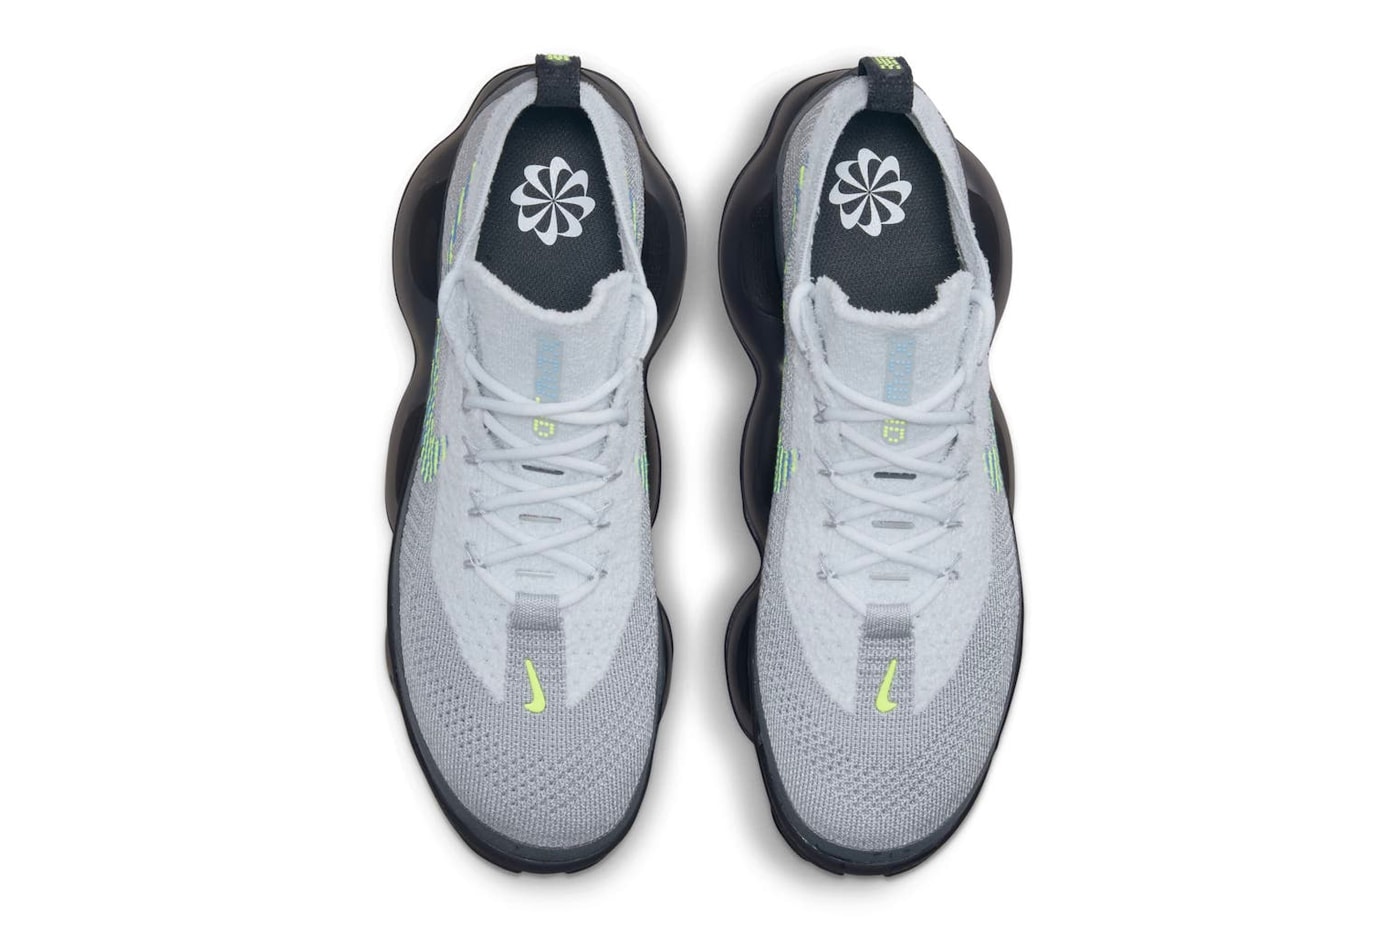 今秋登場予定のナイキエアマックススコーピオンに別カラーウェイが浮上 Nike Air Max Scorpion Wolf Grey Official Look Release Info DJ4701-002 Date Buy Price Volt Wolf Grey Dark Smoke Grey